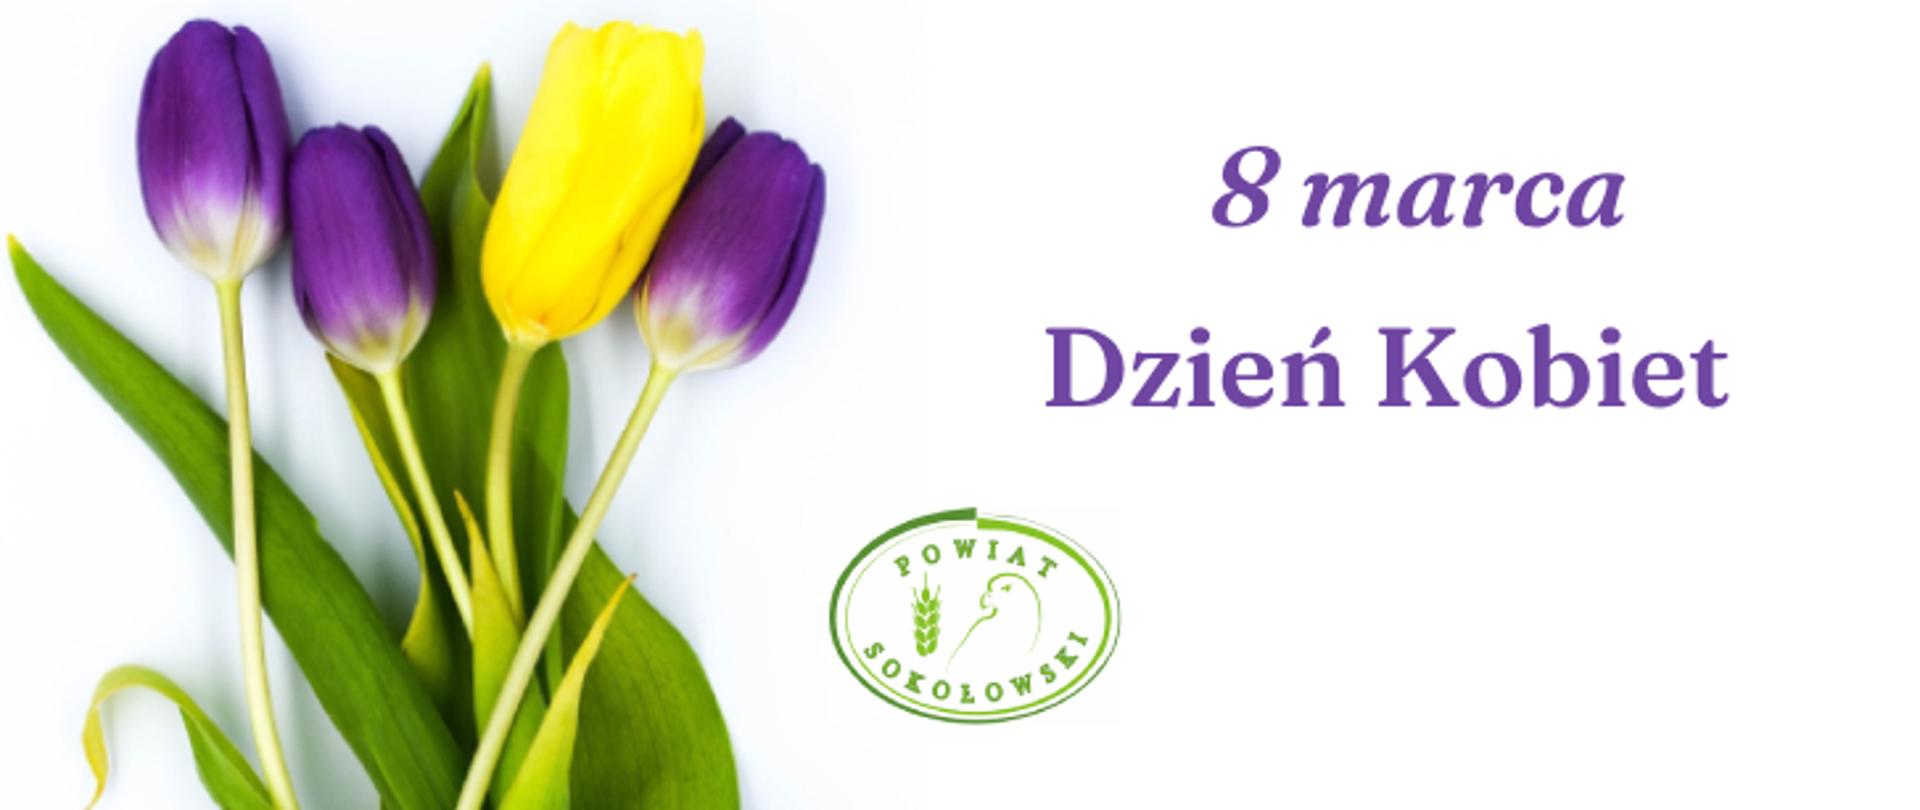 Grafika po lewej stronie tulipany żółte i fioletowe obok zielone logo Powiatu Sokołowskiego z prawej strony fioletowy napis 8 marca Dzień Kobiet.